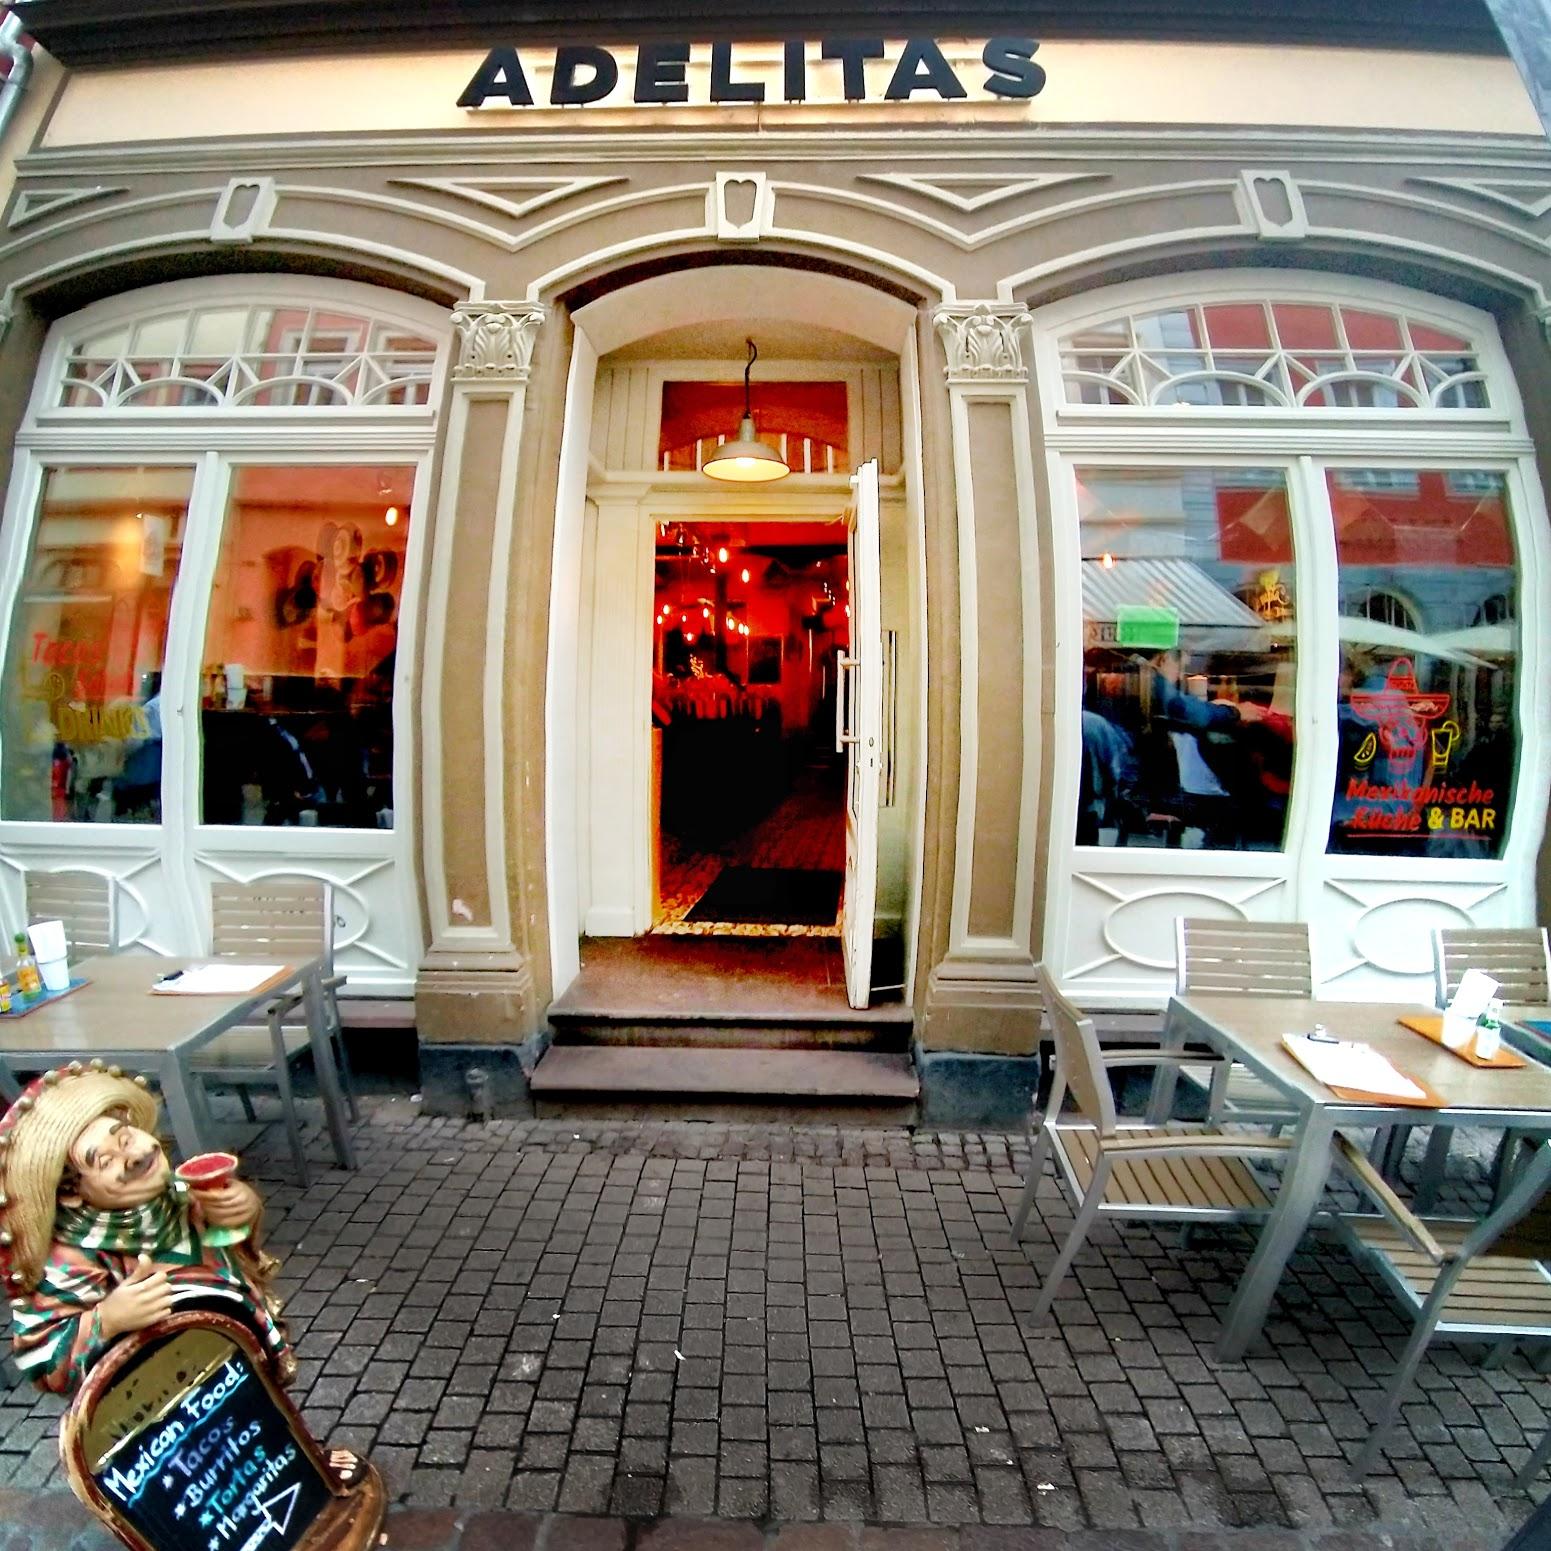 Restaurant "Adelitas" in Heidelberg